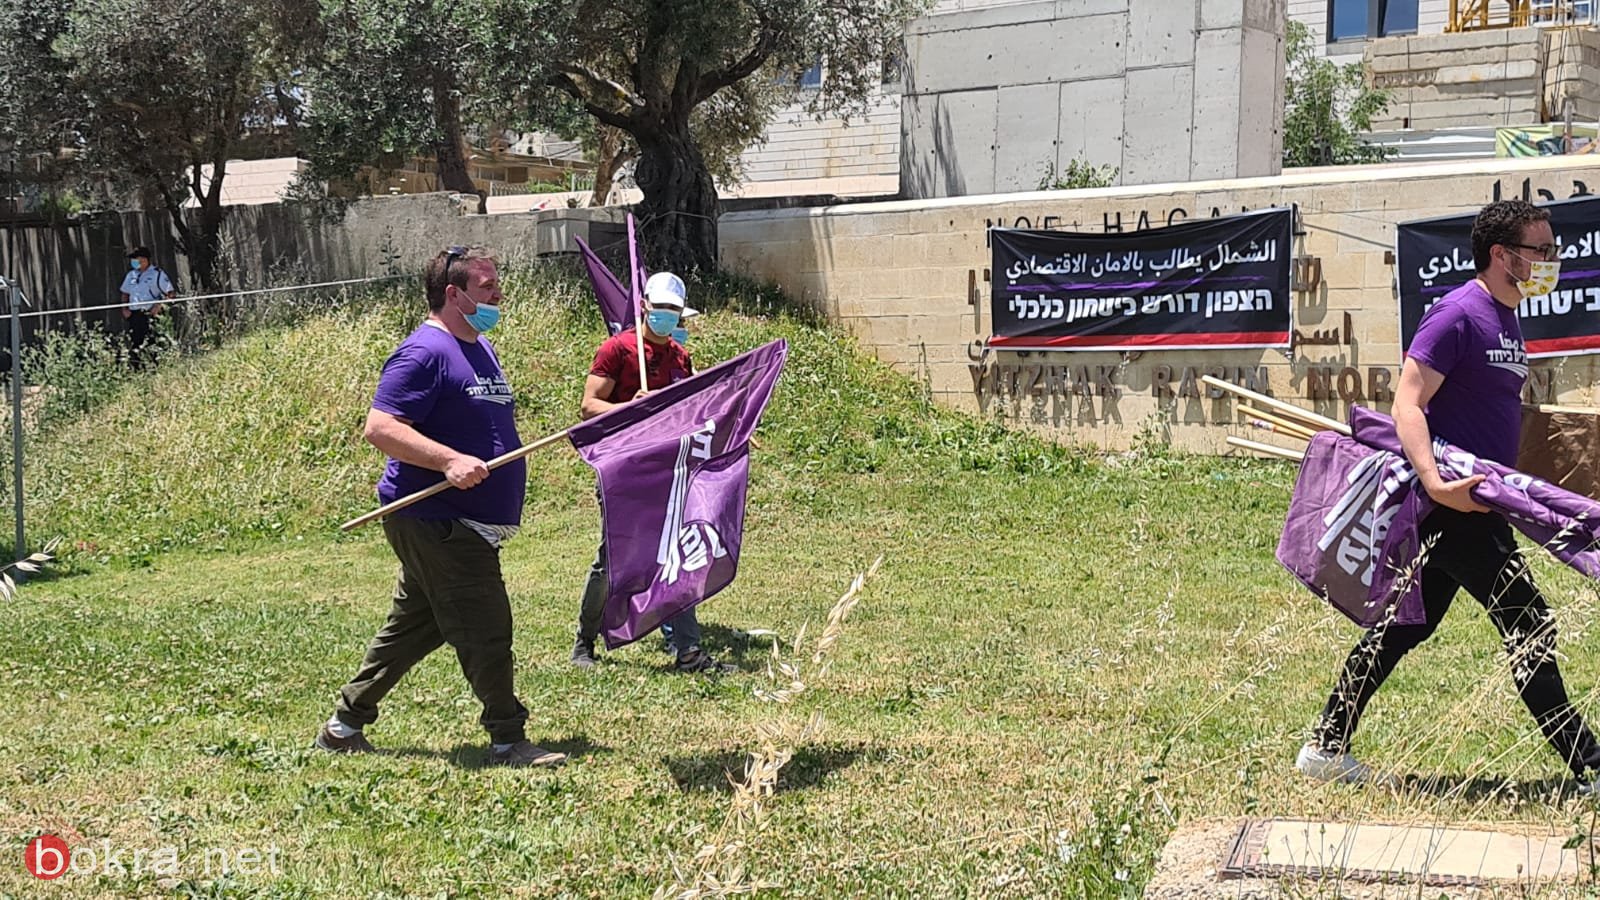 الناصرة: متظاهرون يطالبون بالأمان الاقتصادي بسبب التمييز بالميزانيات-15